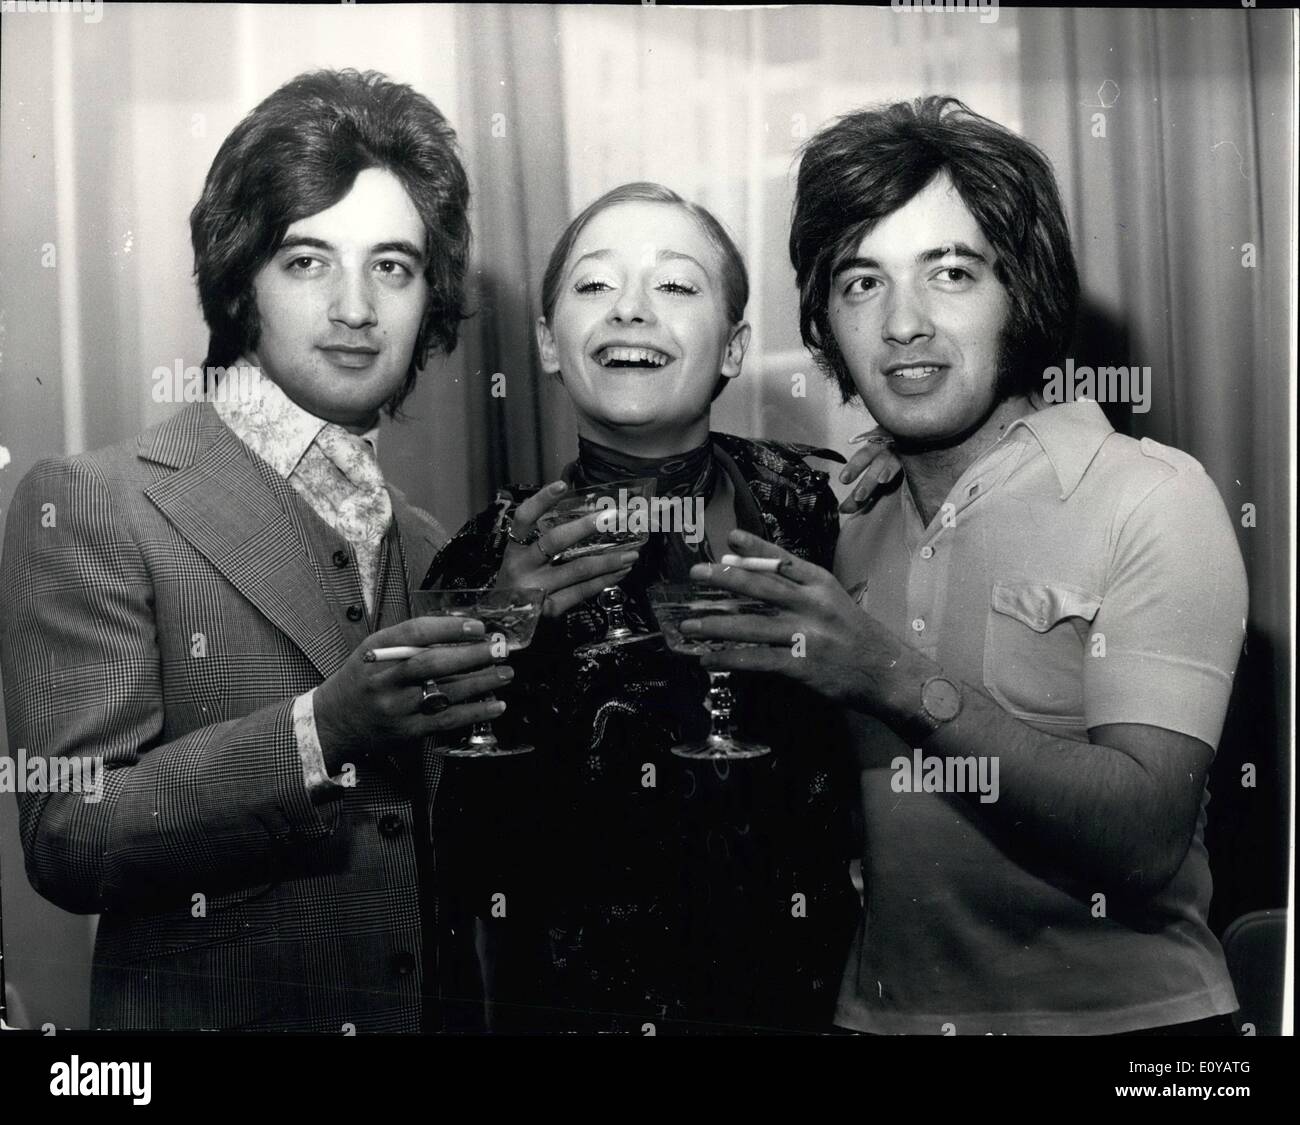 Lug. 07, 1969 - Paolo e Barry Ryan vincere milioni di dollari di contratto: li chiamano i milioni di dollari di fratelli, per Barry e Paolo Ryan Foto Stock